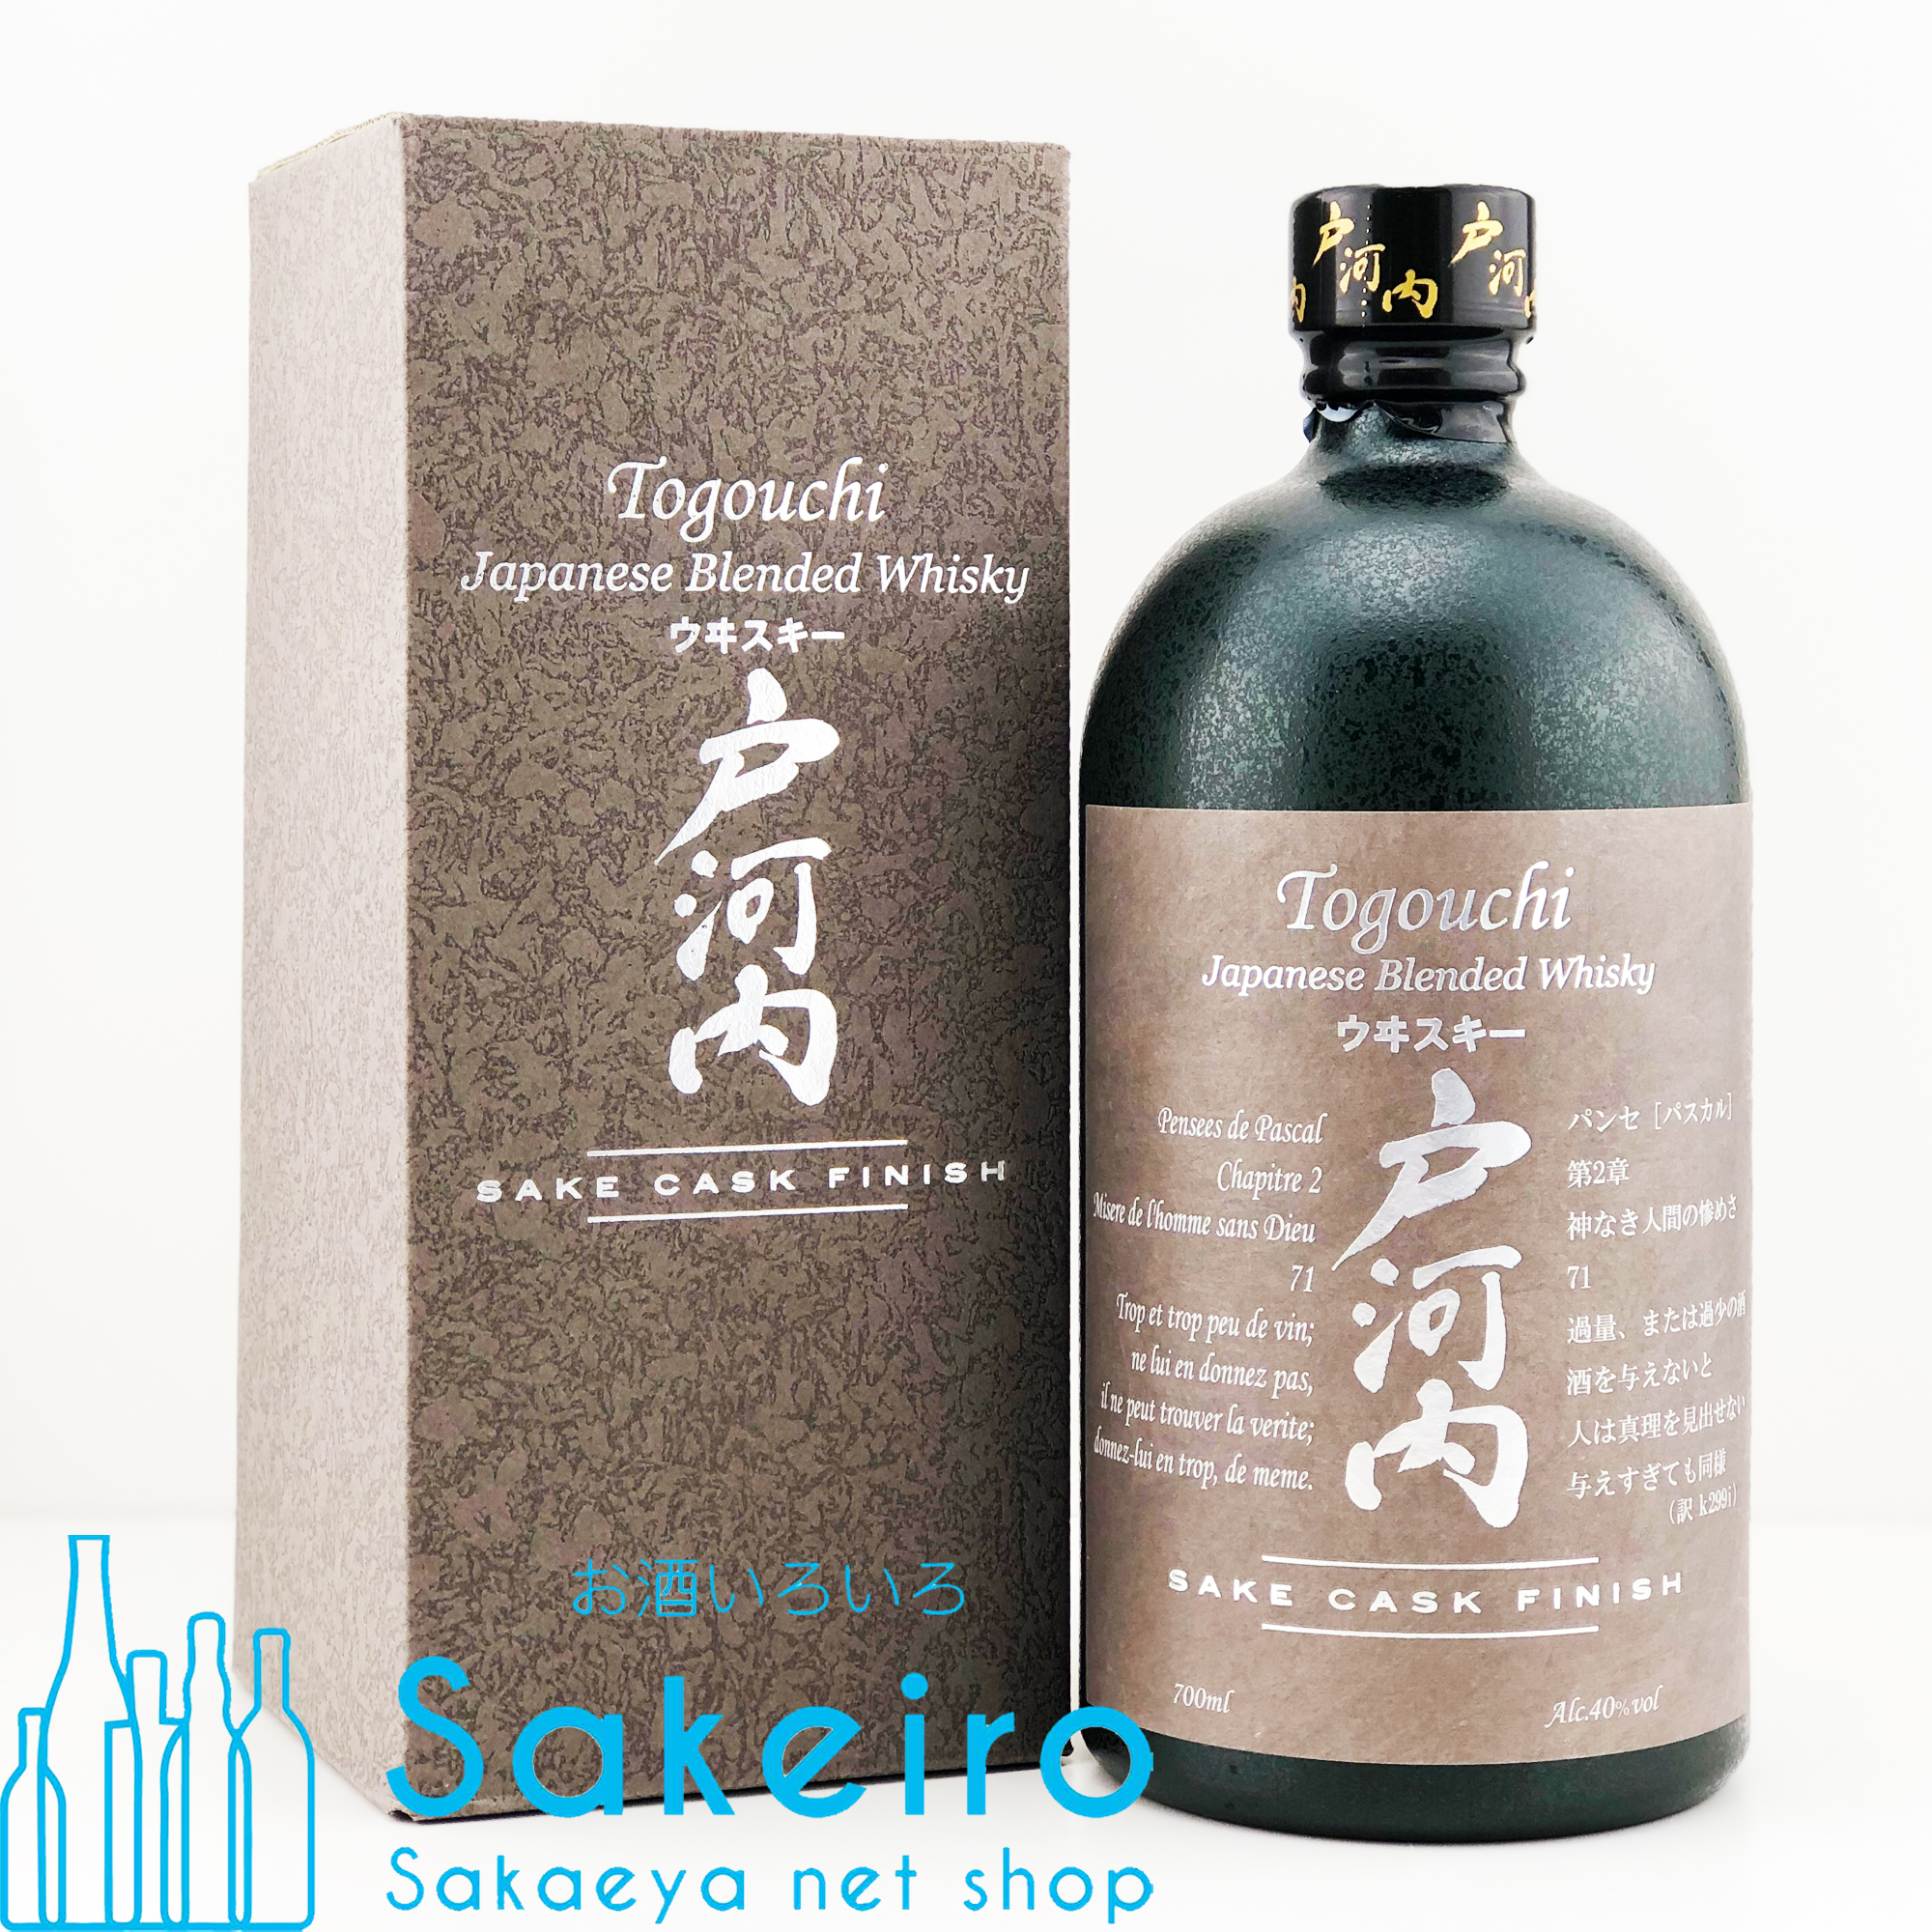 中国醸造 戸河内ウイスキー サケカスク フィニッシュ 40％ 700ml - お酒いろいろ Sakeiro -Sakaeya net shop-